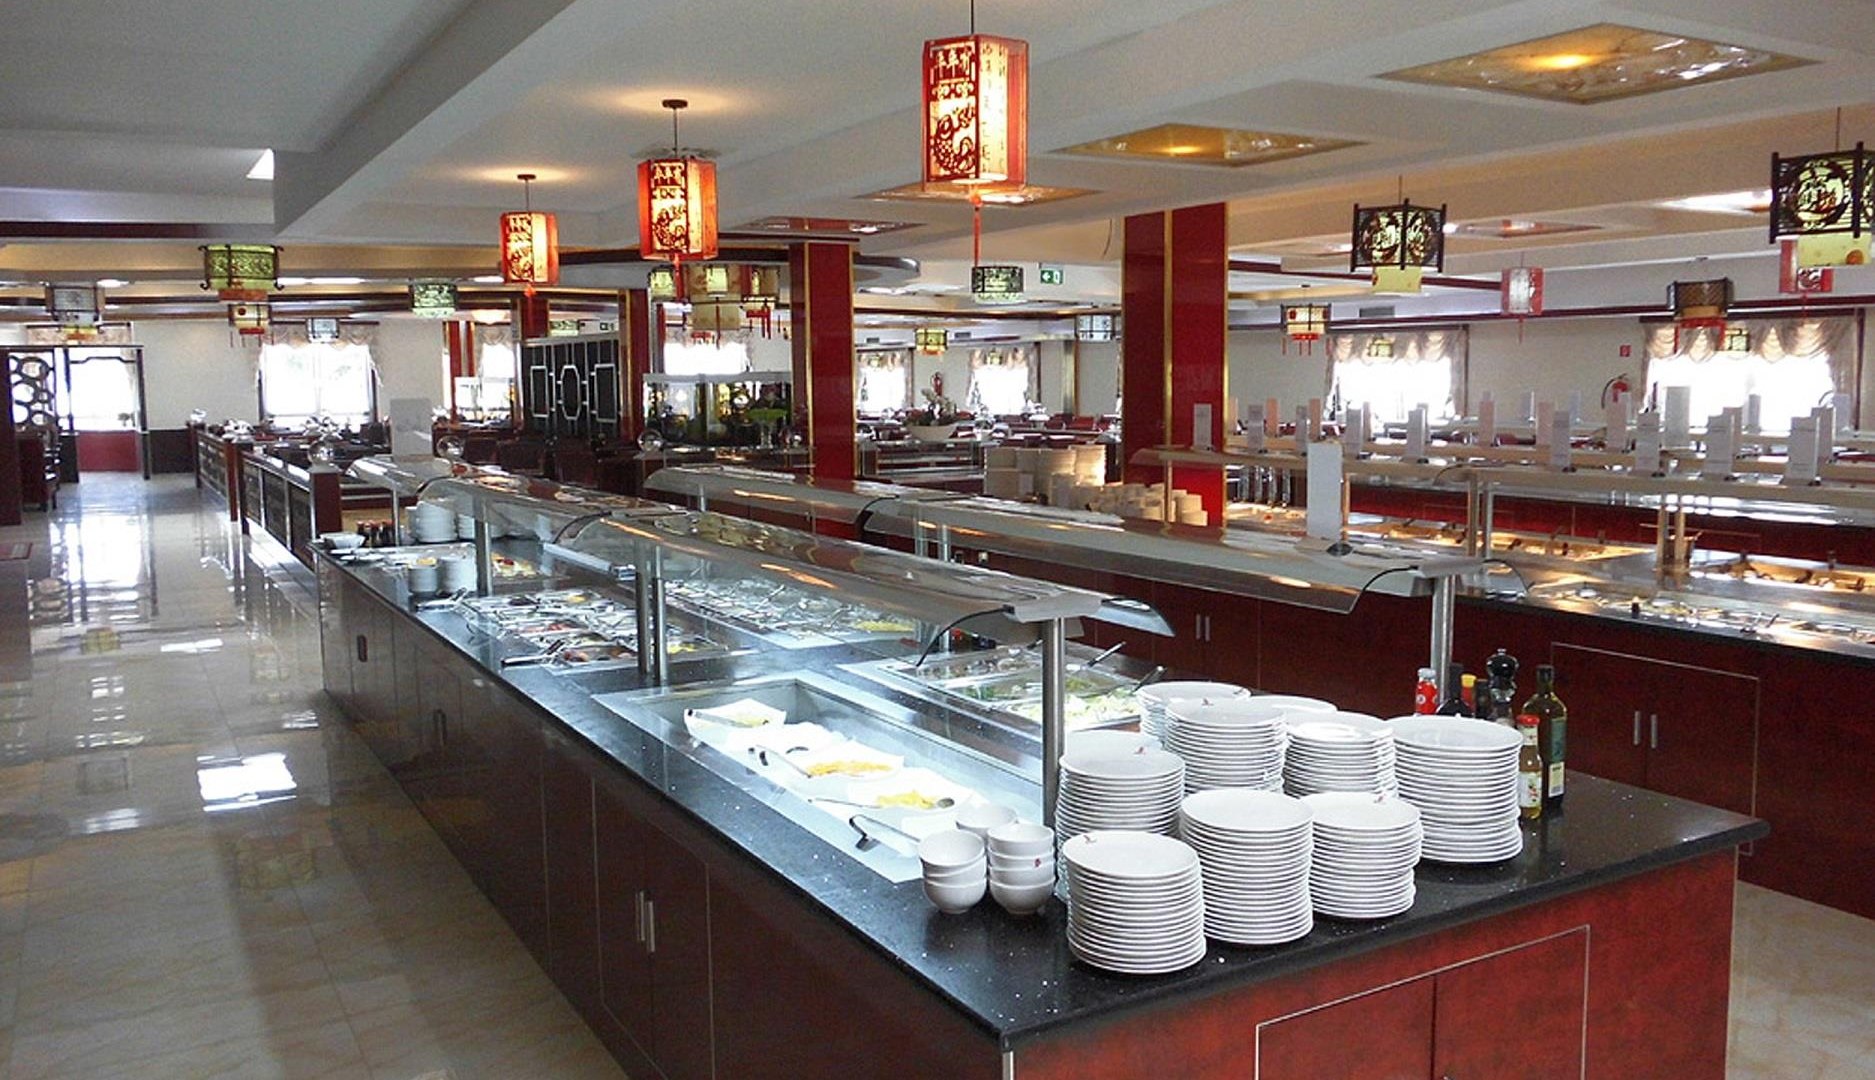 Restaurant Innenansicht | © Asiatisches Restaurant Mongolei Neuwied